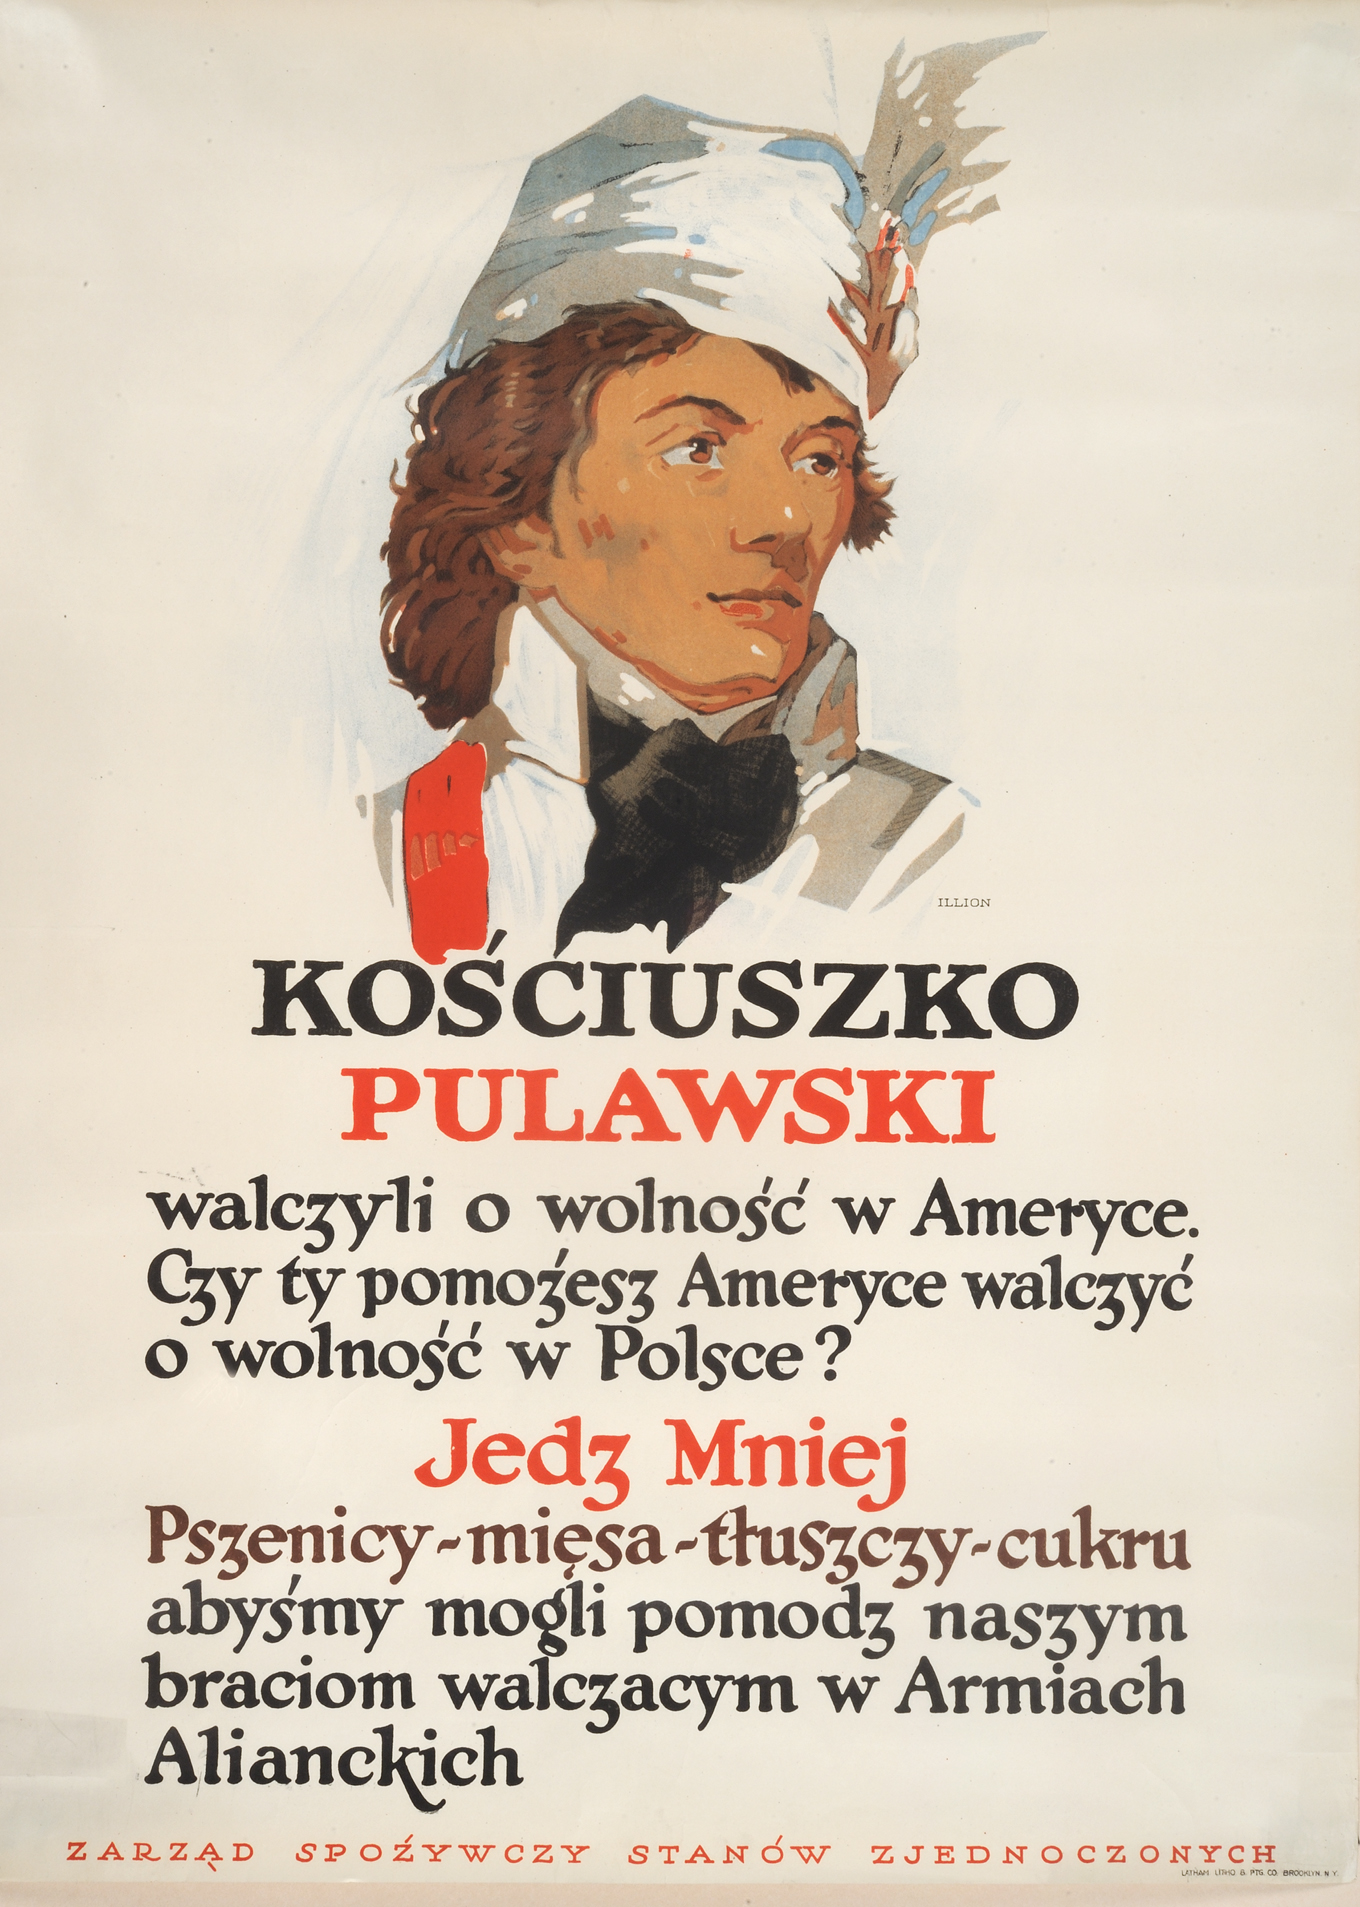 Kosciuszko, Pulawski walczyli o wolnosc w Ameryce, Brooklyn, N.Y.: Latham Lithography & Printing Co., [1917]